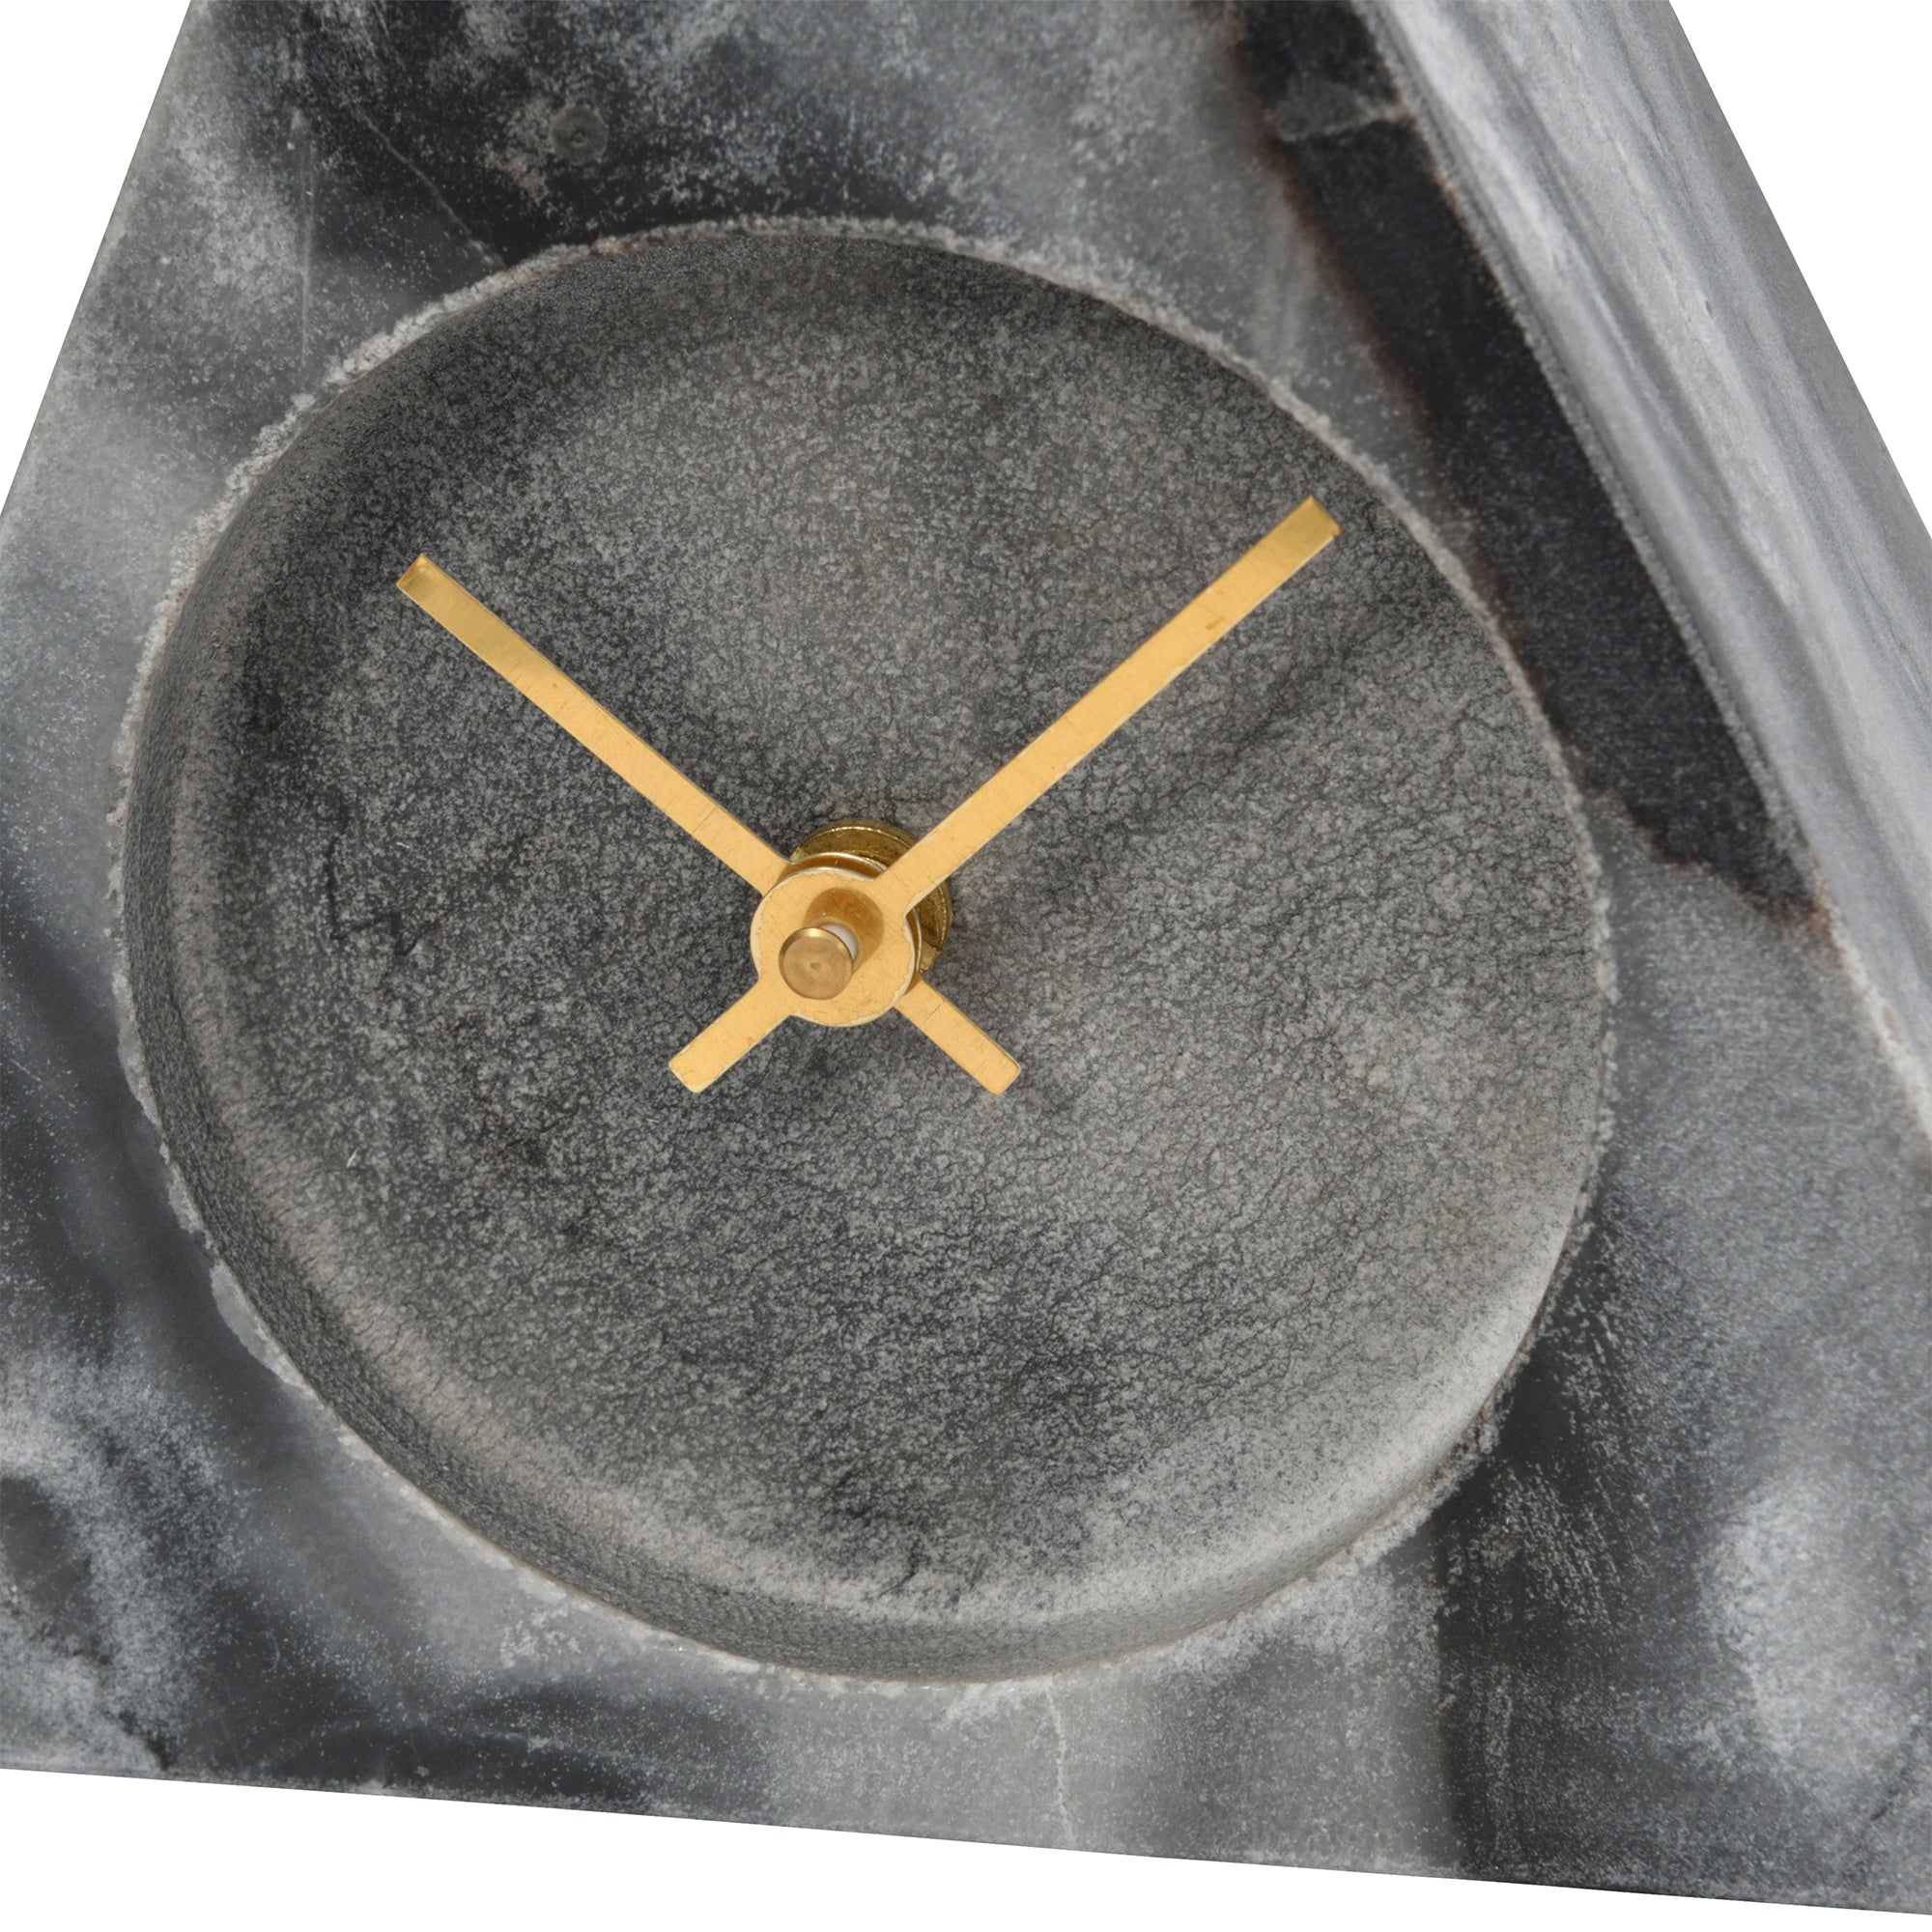 Triangular Mantel Clock - Grey Marble